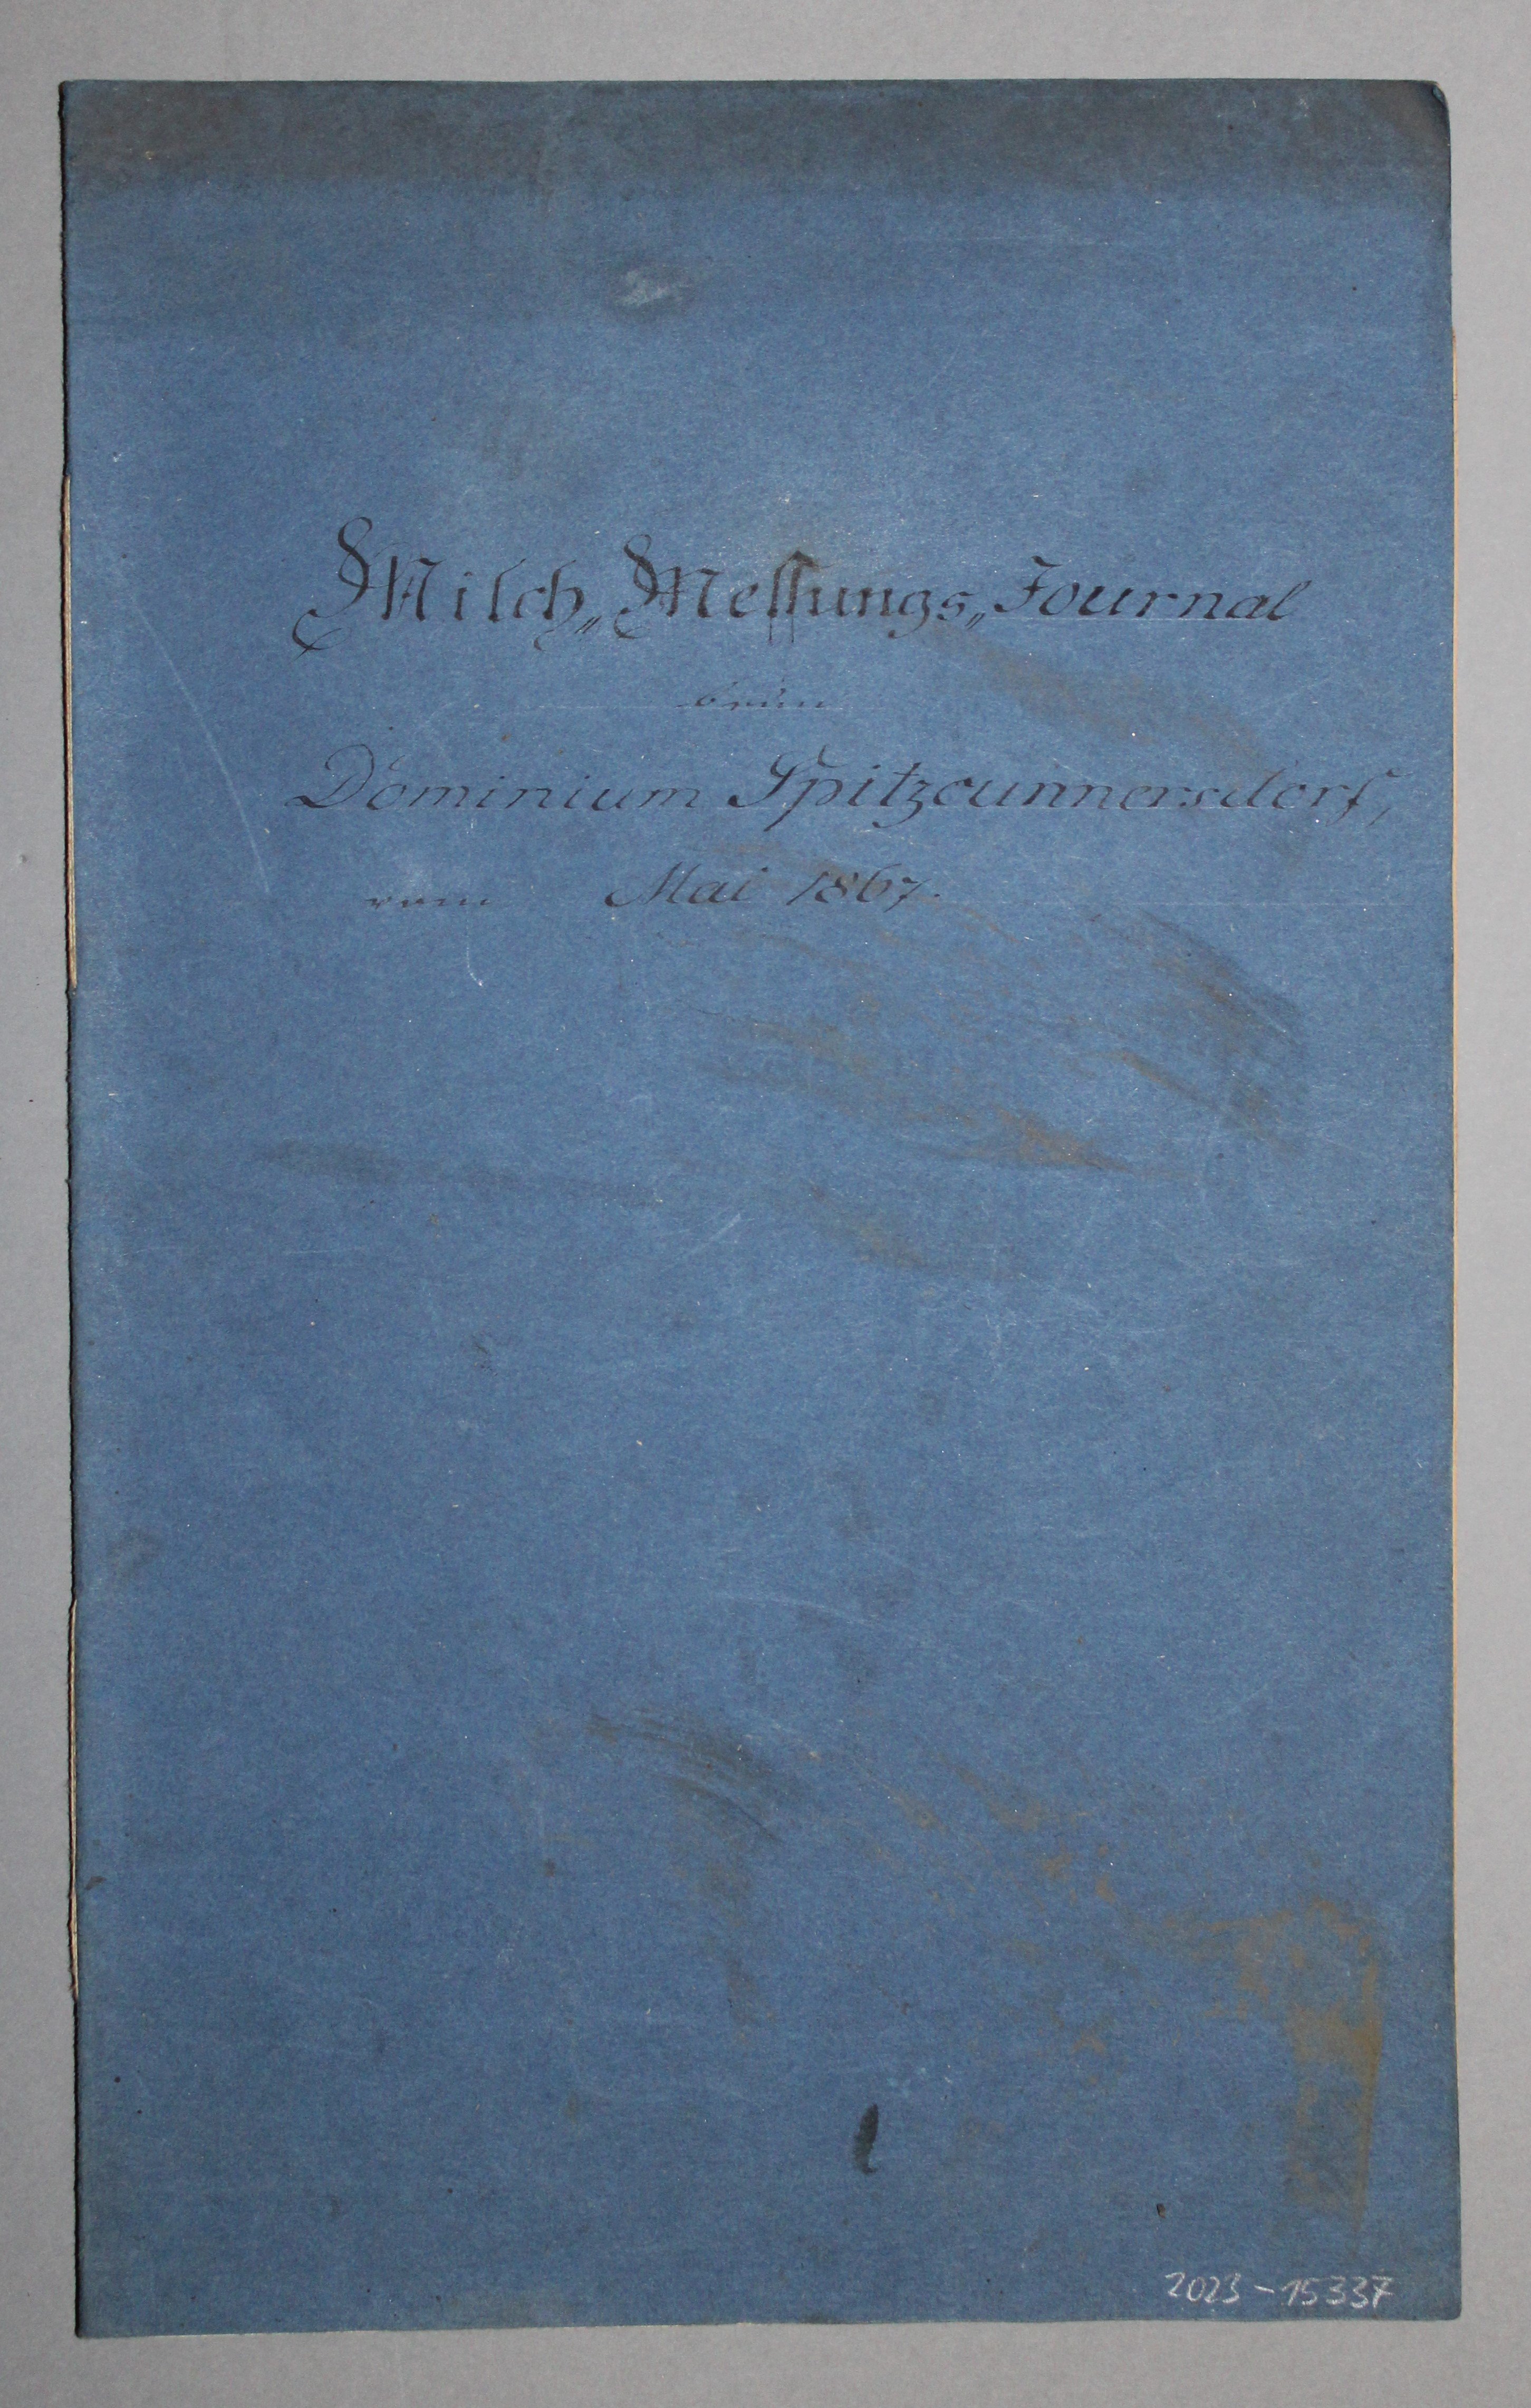 Milch-Messungs-Journal Rittergut Spitzkunnersdorf (Deutsches Damast- und Frottiermuseum CC BY-NC-SA)